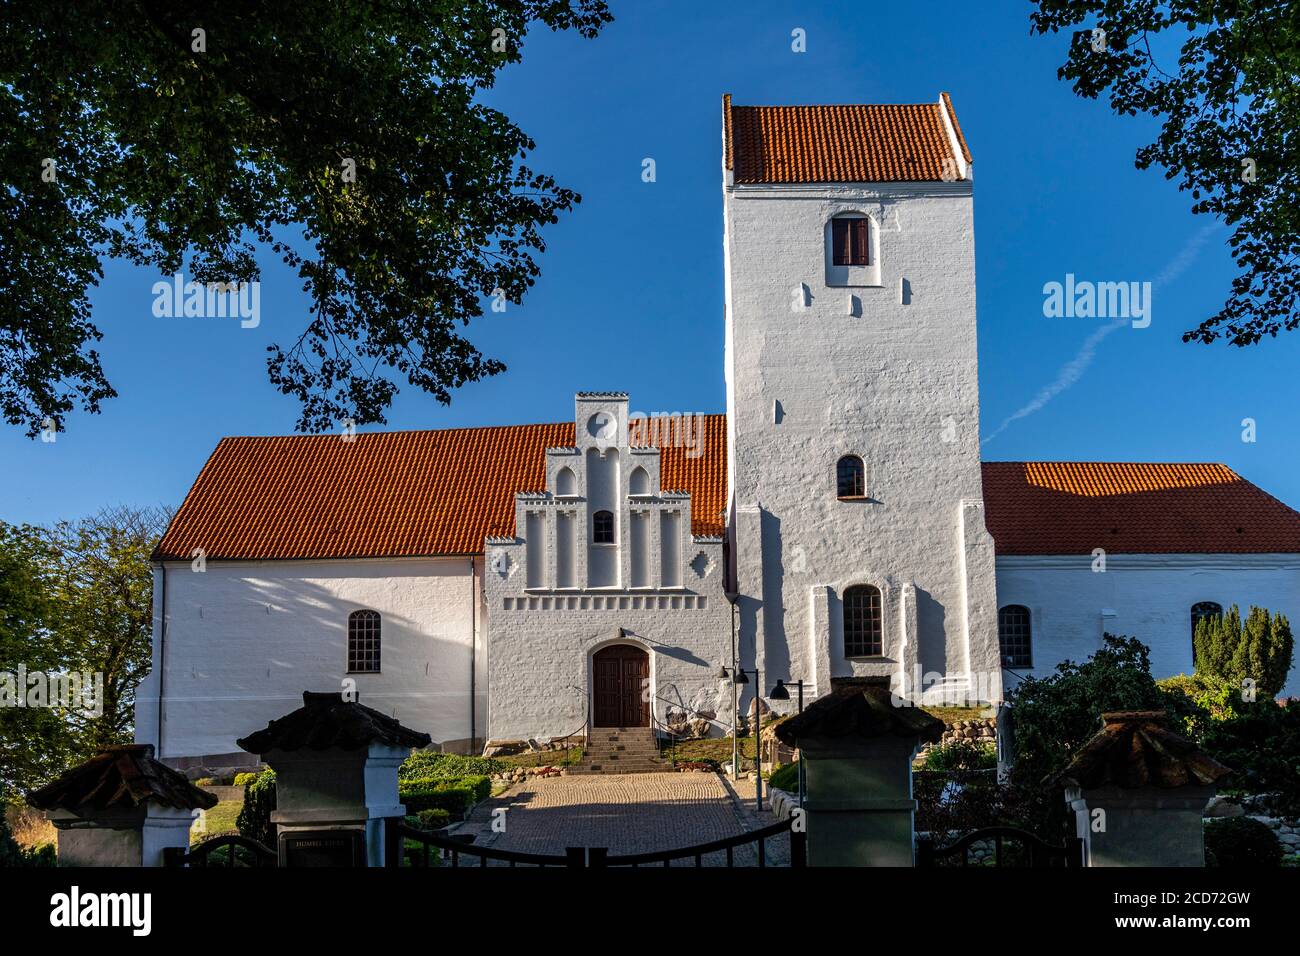 Die Kirche von humble, Insel Langeland, Dänemark, Europa | Umble Church, Langeland Island, Danemark, Europe Banque D'Images